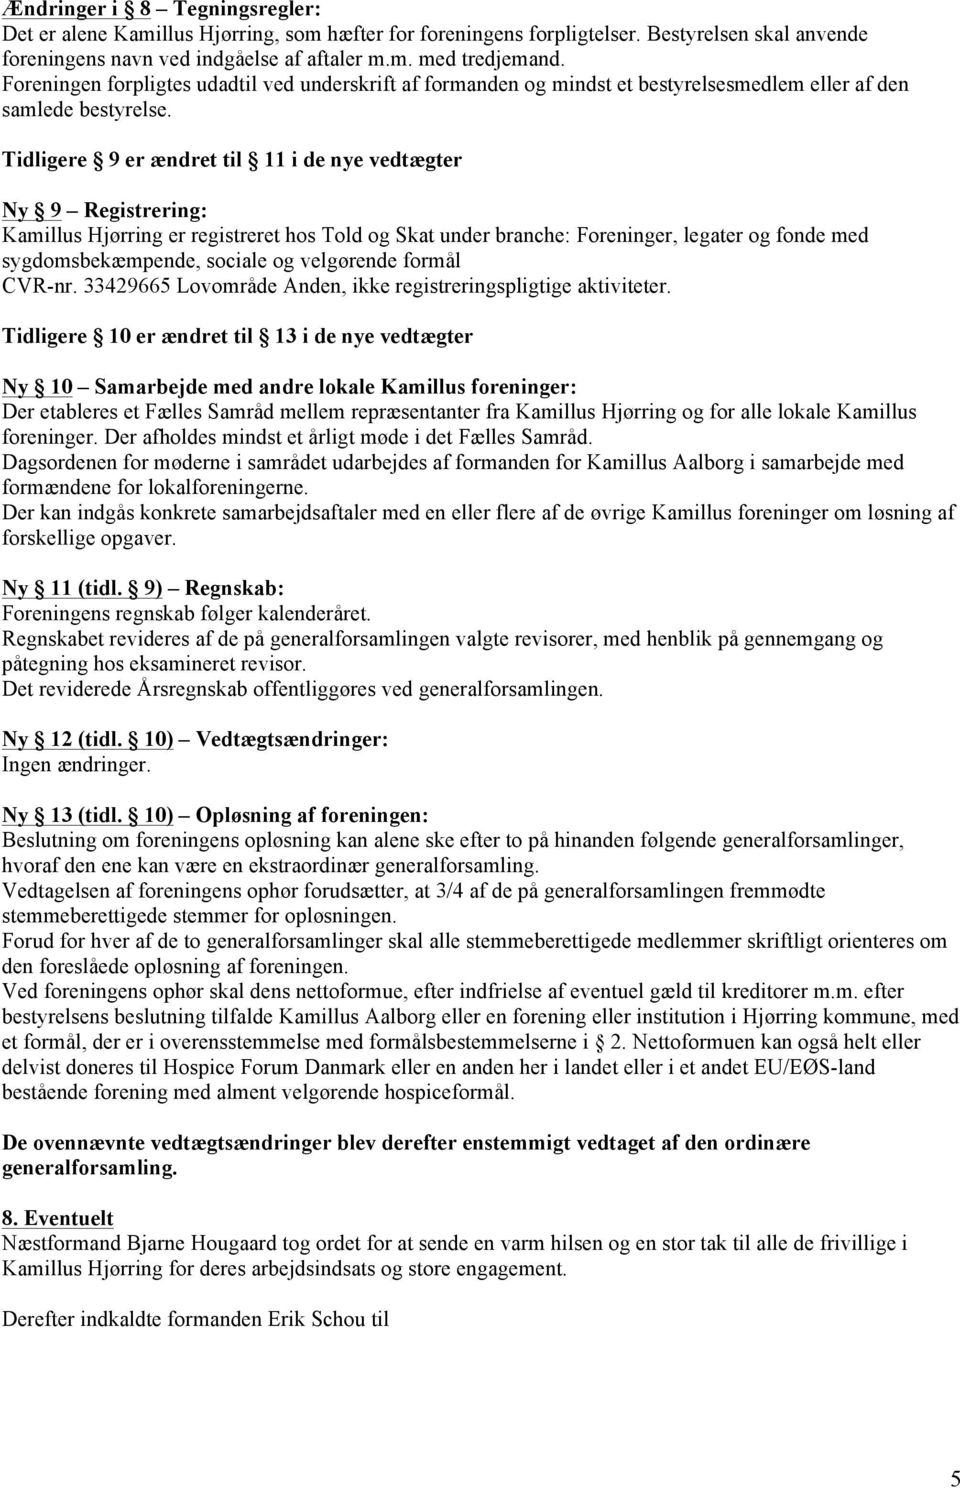 Tidligere 9 er ændret til 11 i de nye vedtægter Ny 9 Registrering: Kamillus Hjørring er registreret hos Told og Skat under branche: Foreninger, legater og fonde med sygdomsbekæmpende, sociale og